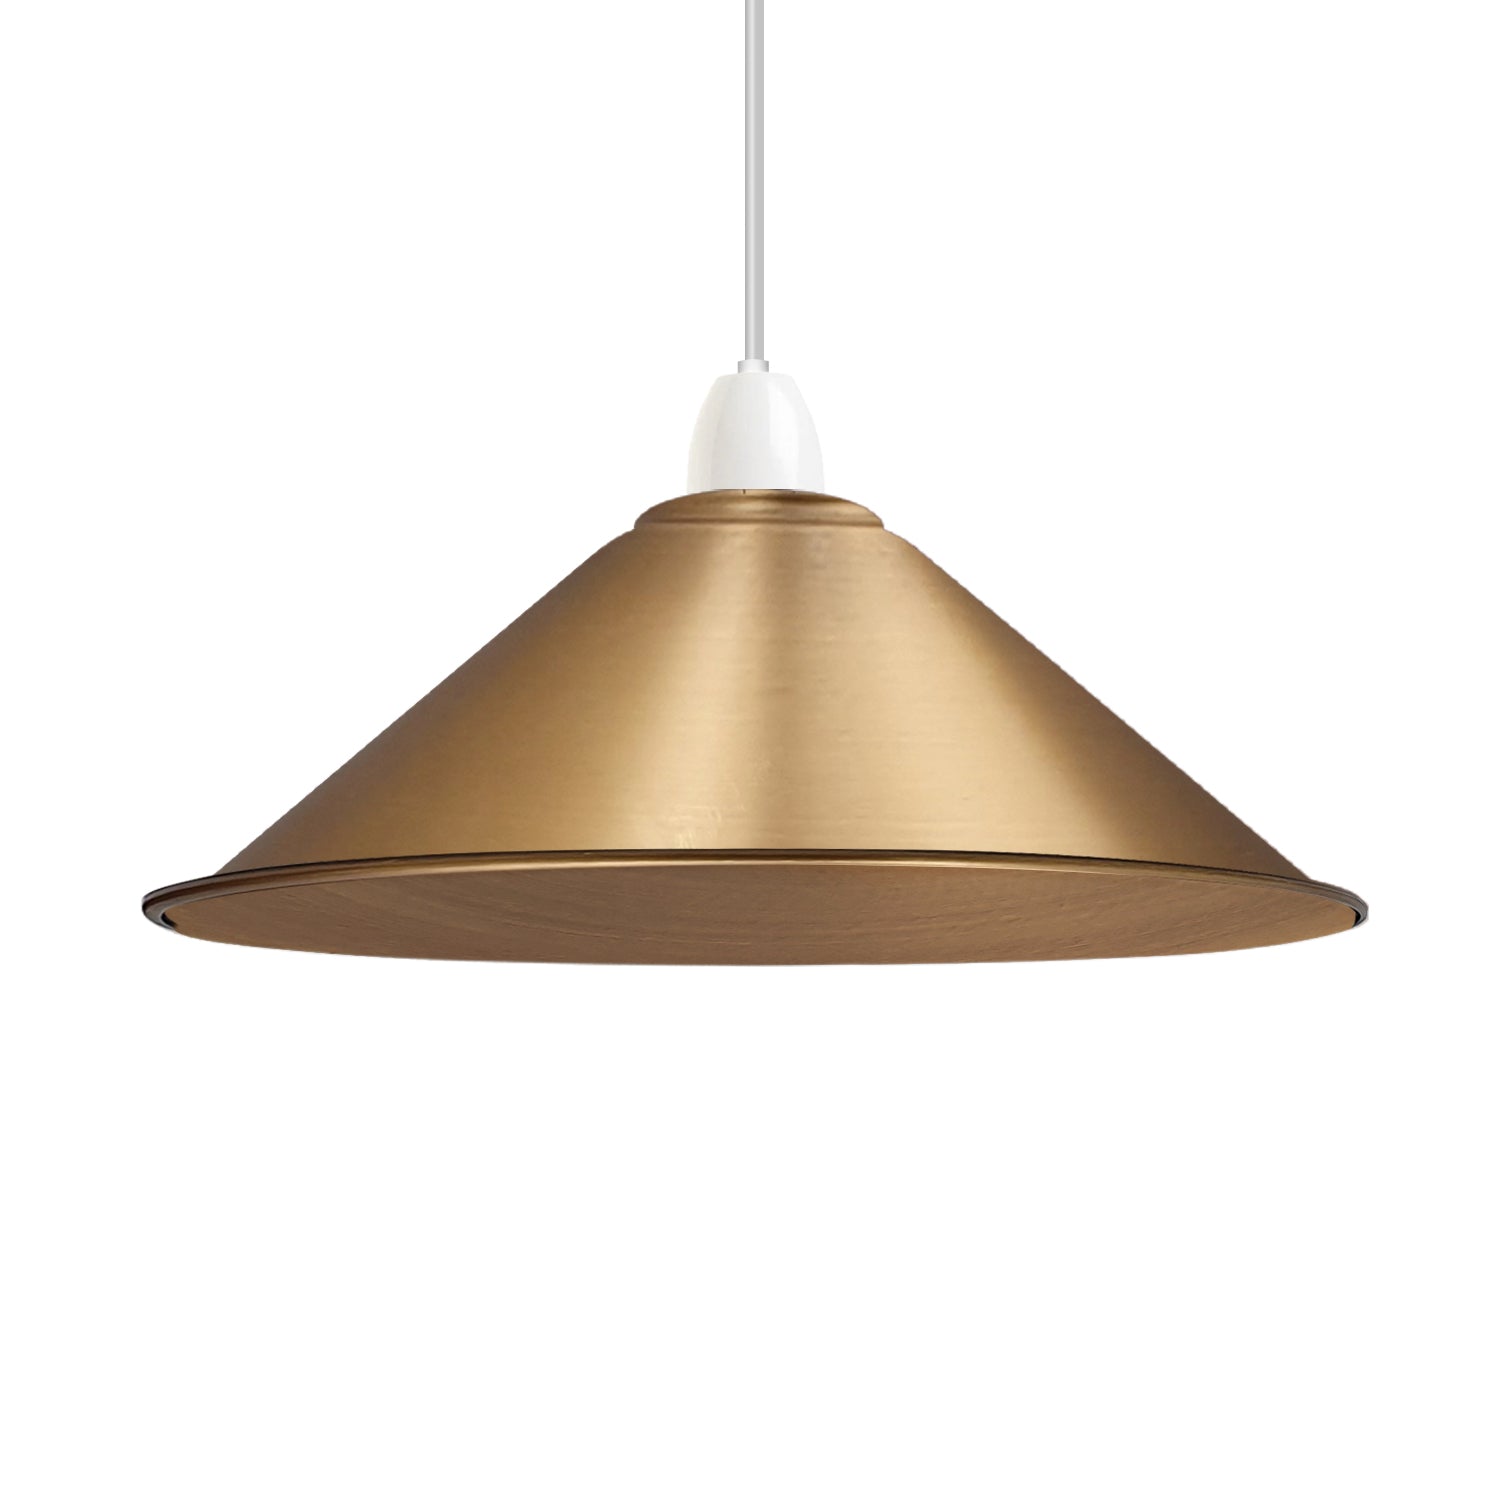 Get set for Frunch gold light shade in Home furnishings, Lighting, Lamp shades at vintagelite UK